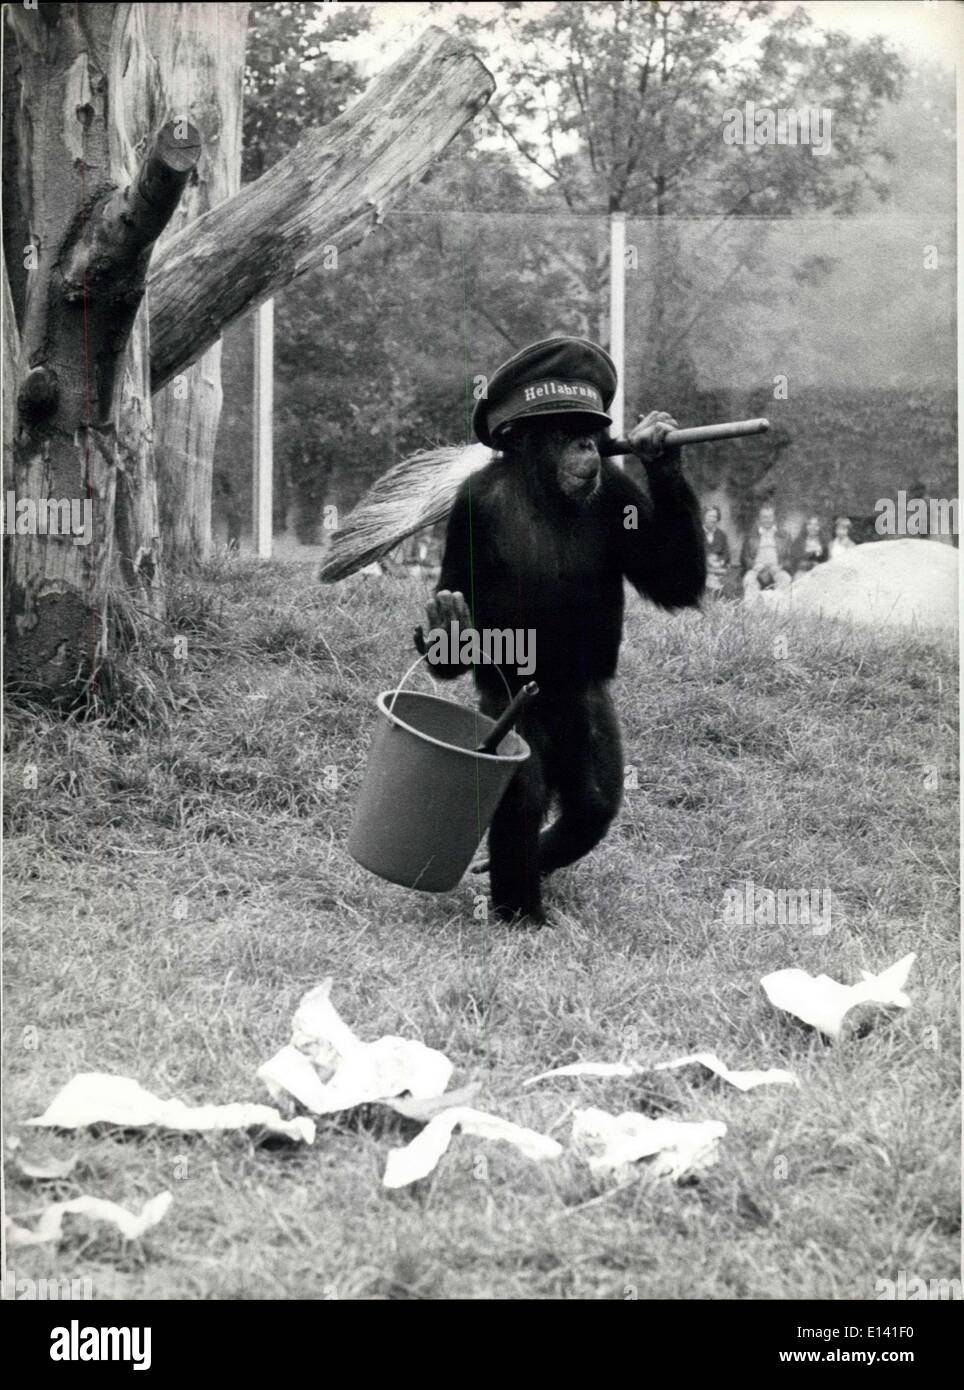 31 mars 2012 - Merde ! : il y a à peine quelques minutes, j'ai nettoyé cette partie de ma réservation très bien et maintenant, il semble que plus confus qu'avant. Oh, si je pouvais attraper ces décideurs de la pollution. Je ne veux pas être l'imbécile de ''Hellabrunn'' (le zoo de Munich) Si ces conditions ne changeront pas, je'ill fin et retourner à la jungle. Photo montre ''Waldemar'', le jeune chimpanzé du zoo de Munich. Banque D'Images